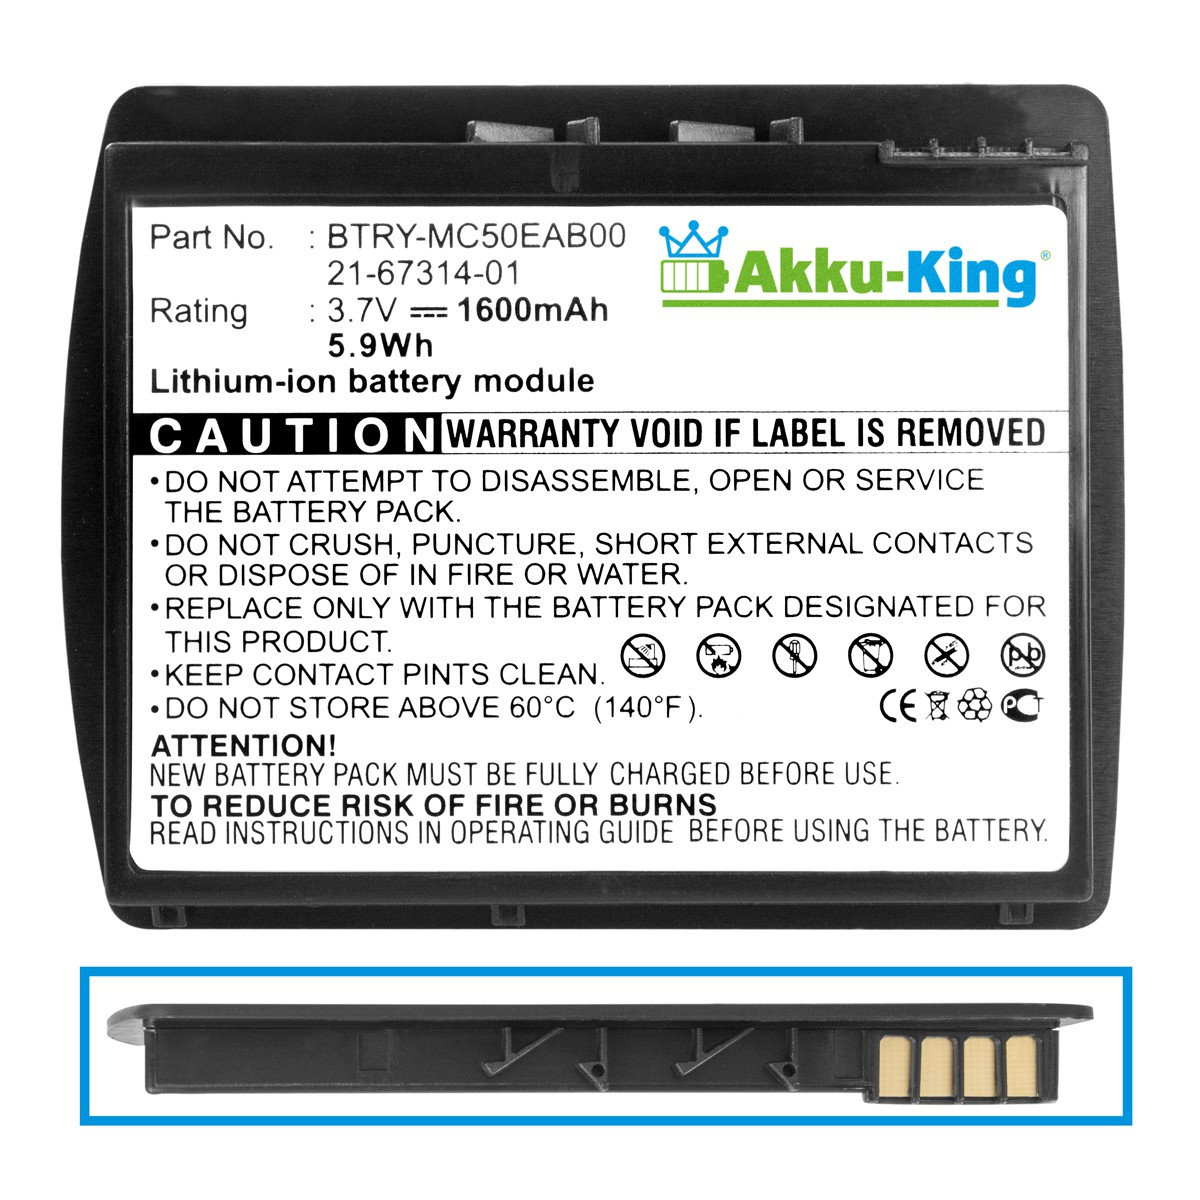 AKKU-KING kompatibel 1600mAh mit Symbol Geräte-Akku, BTRY-MC50EAB00 Volt, 3.7 Li-Ion Akku